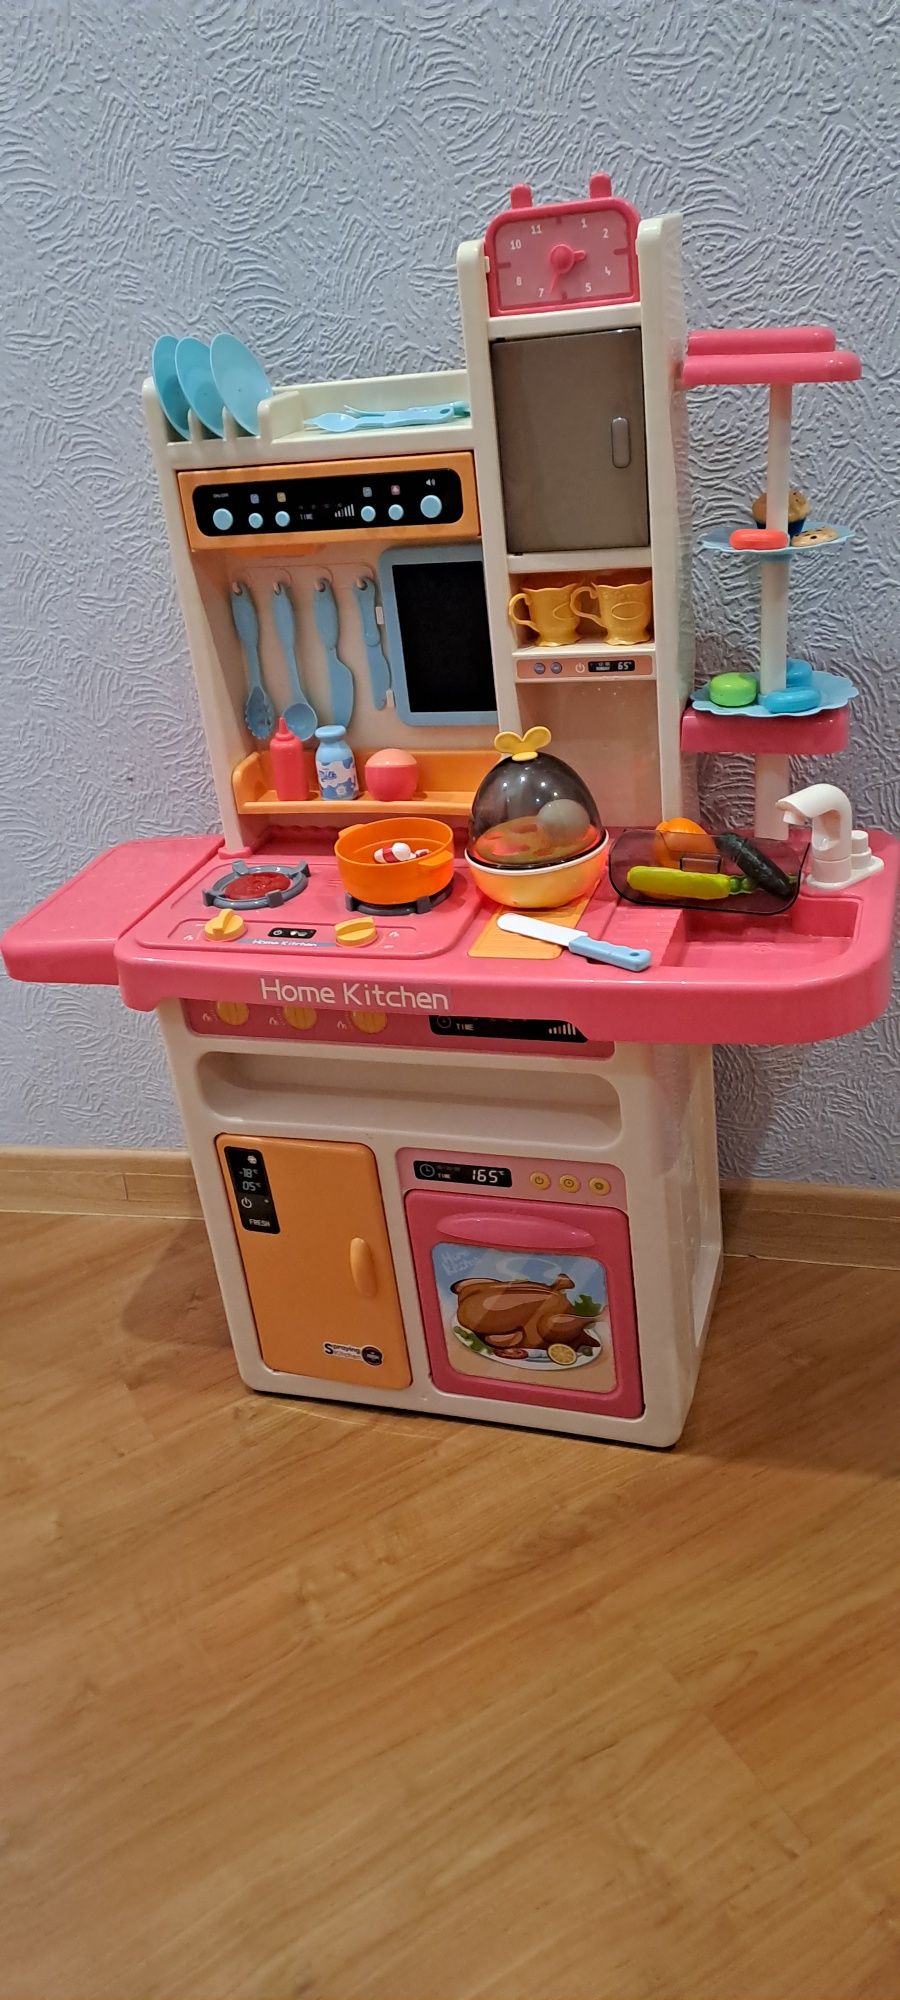 Кухня Home Kitchen для принцесс